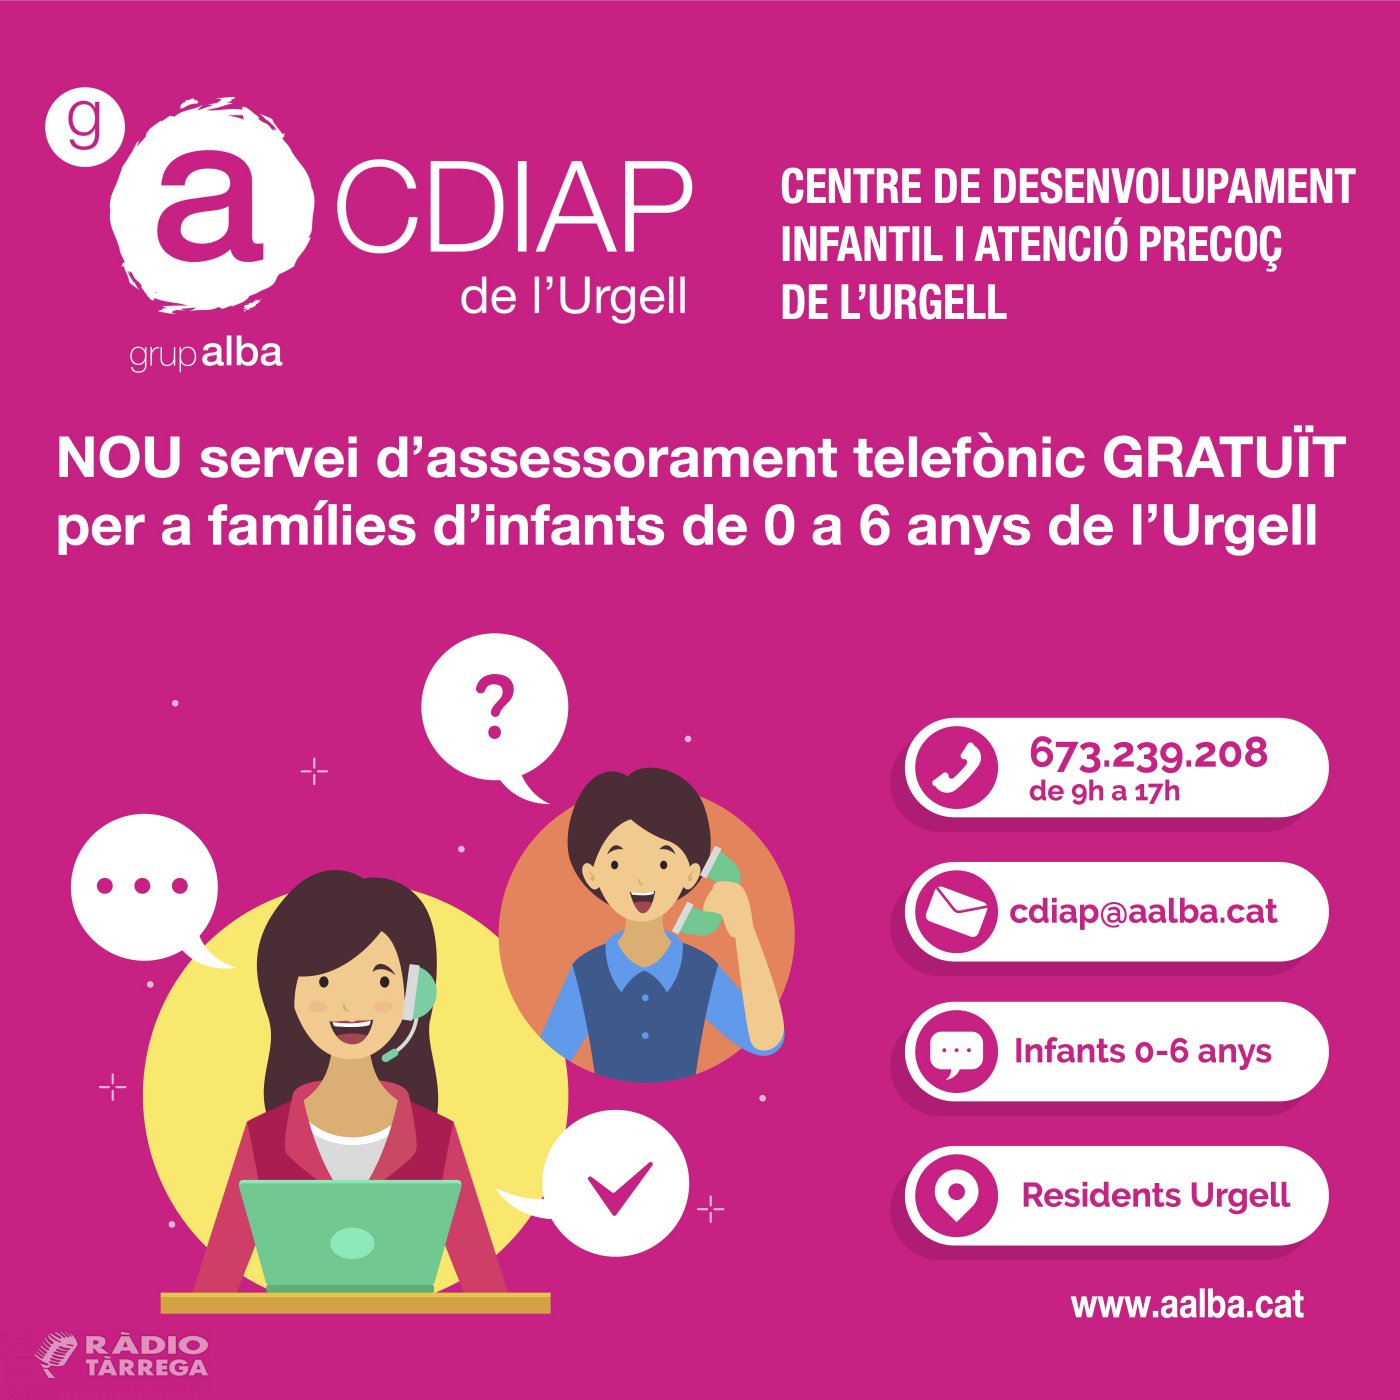 El CDIAP del del Grup Alba ofereix suport telefònic gratuït a les famílies amb infants de 0 a 6 anys de l'Urgell